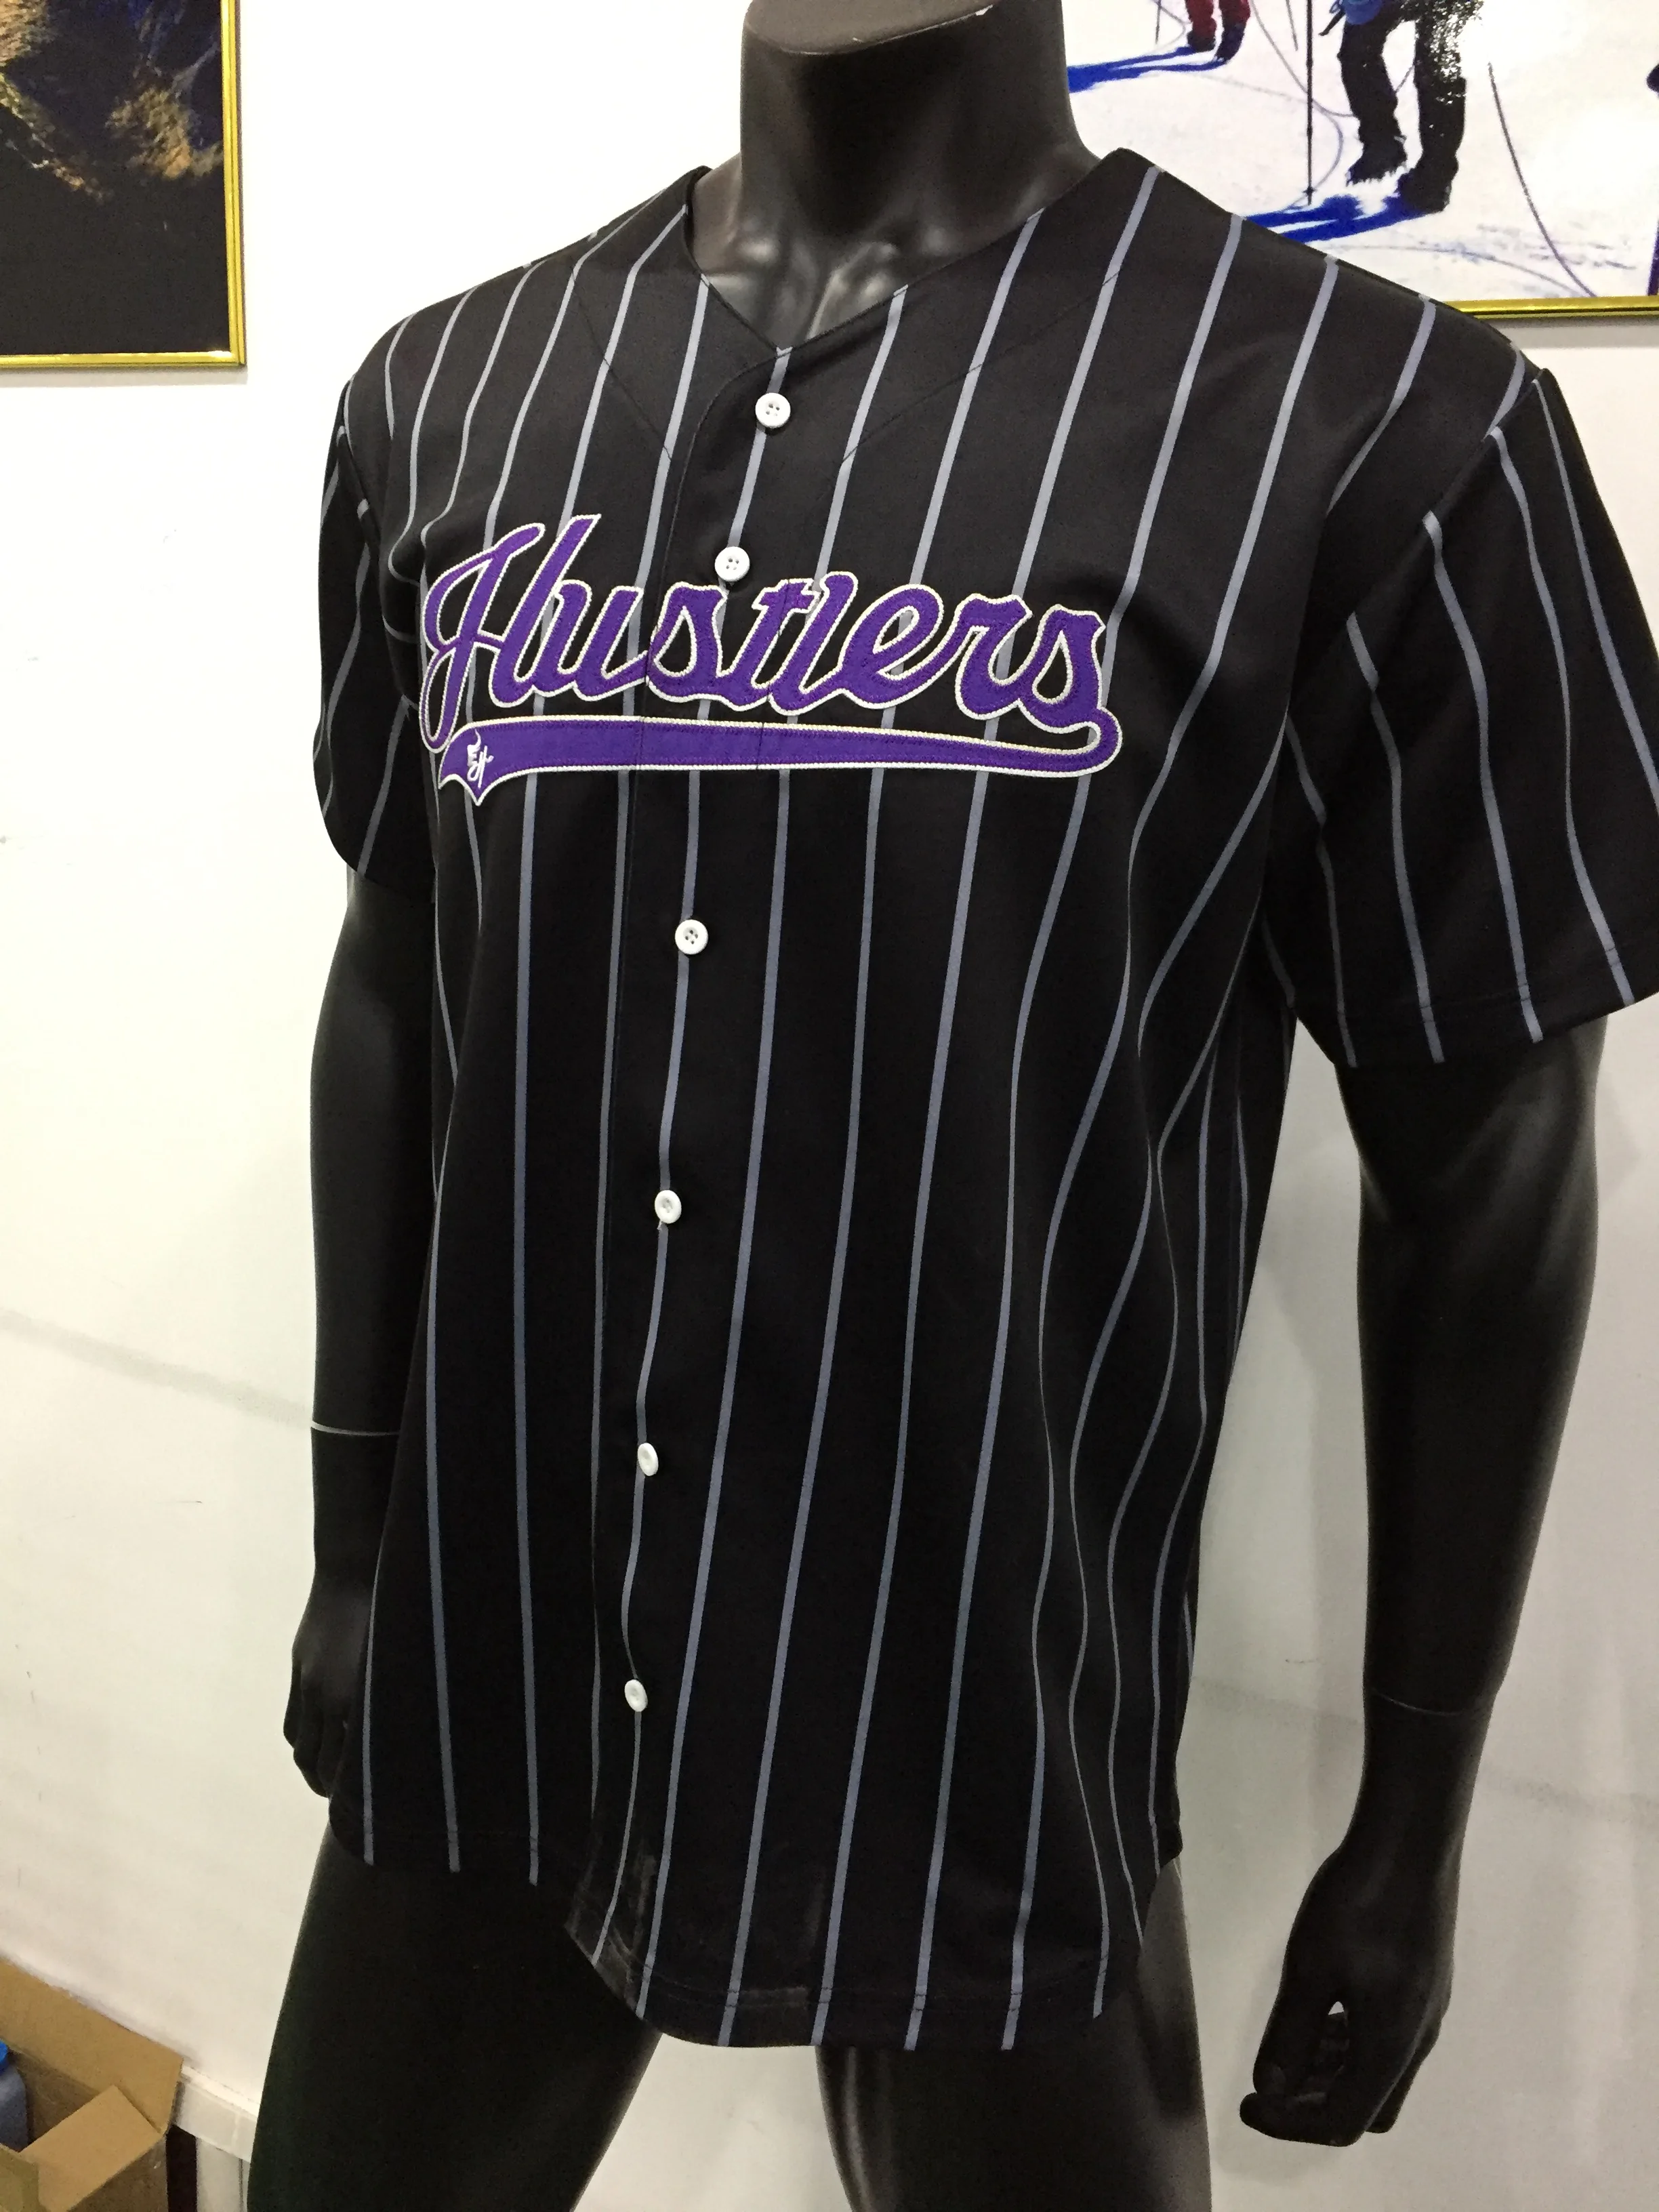 purple pinstripe baseball jersey